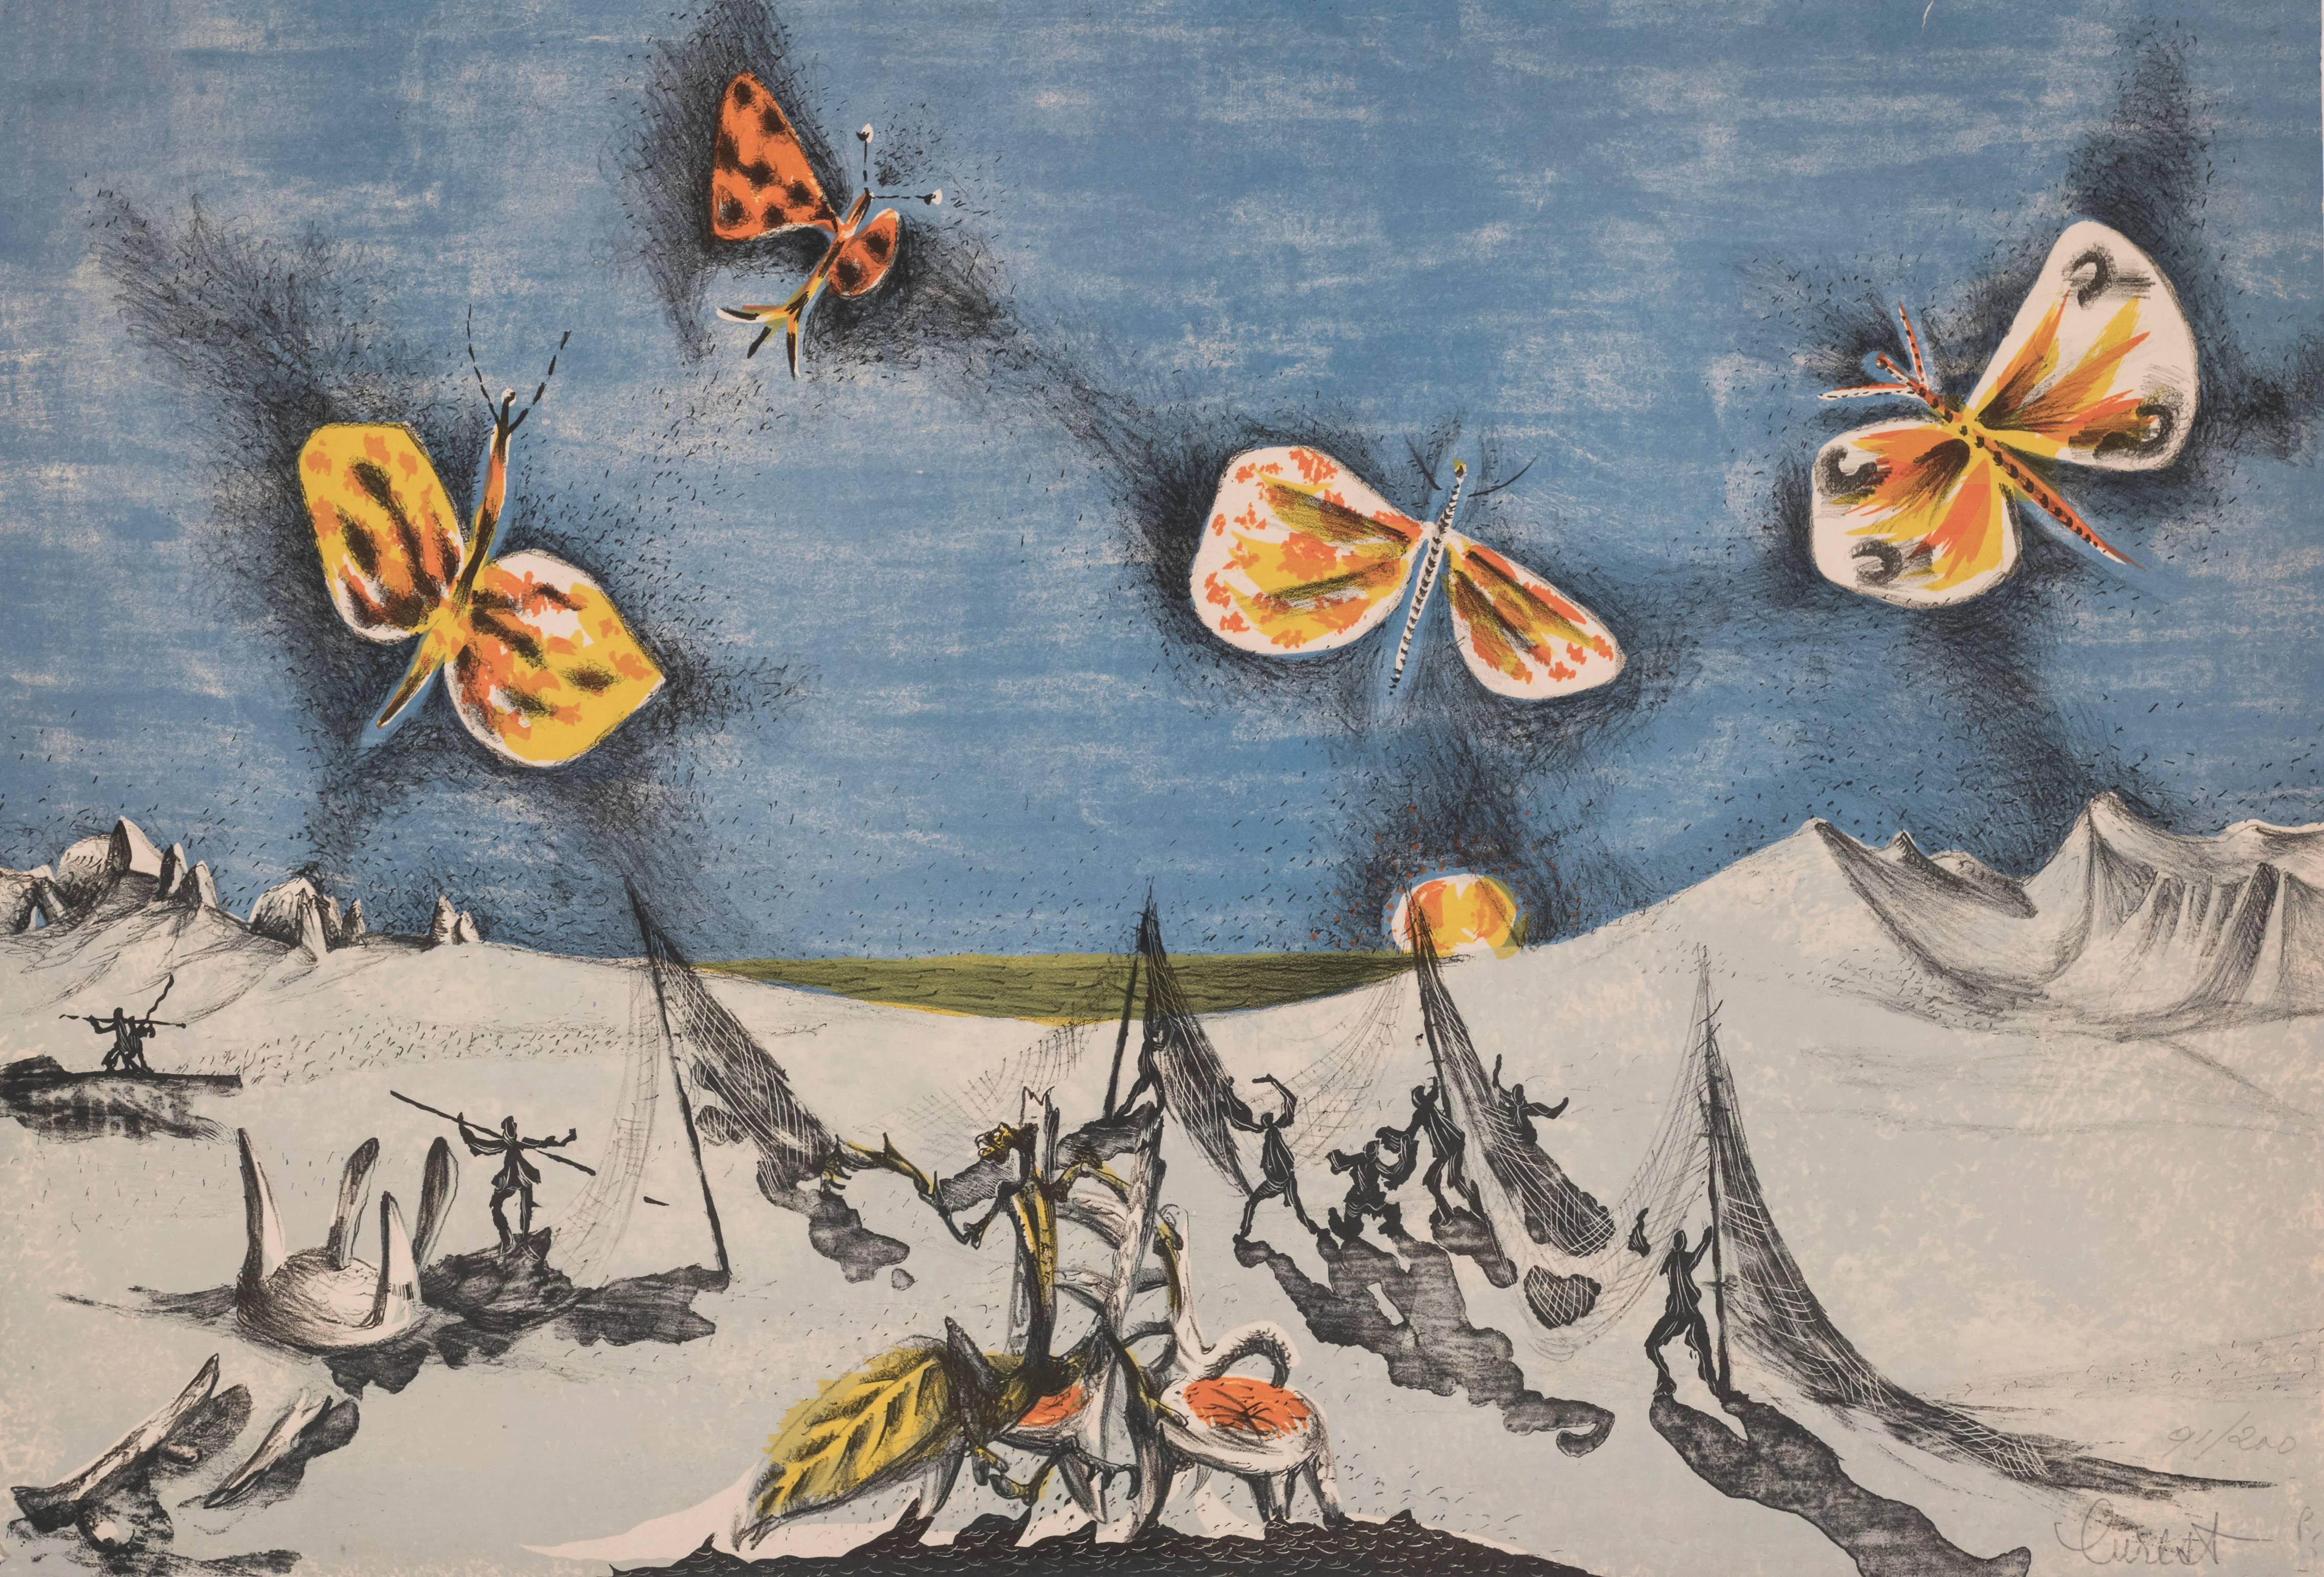 Jean Lurcat Landscape Print - Landscape with Butterfilies 